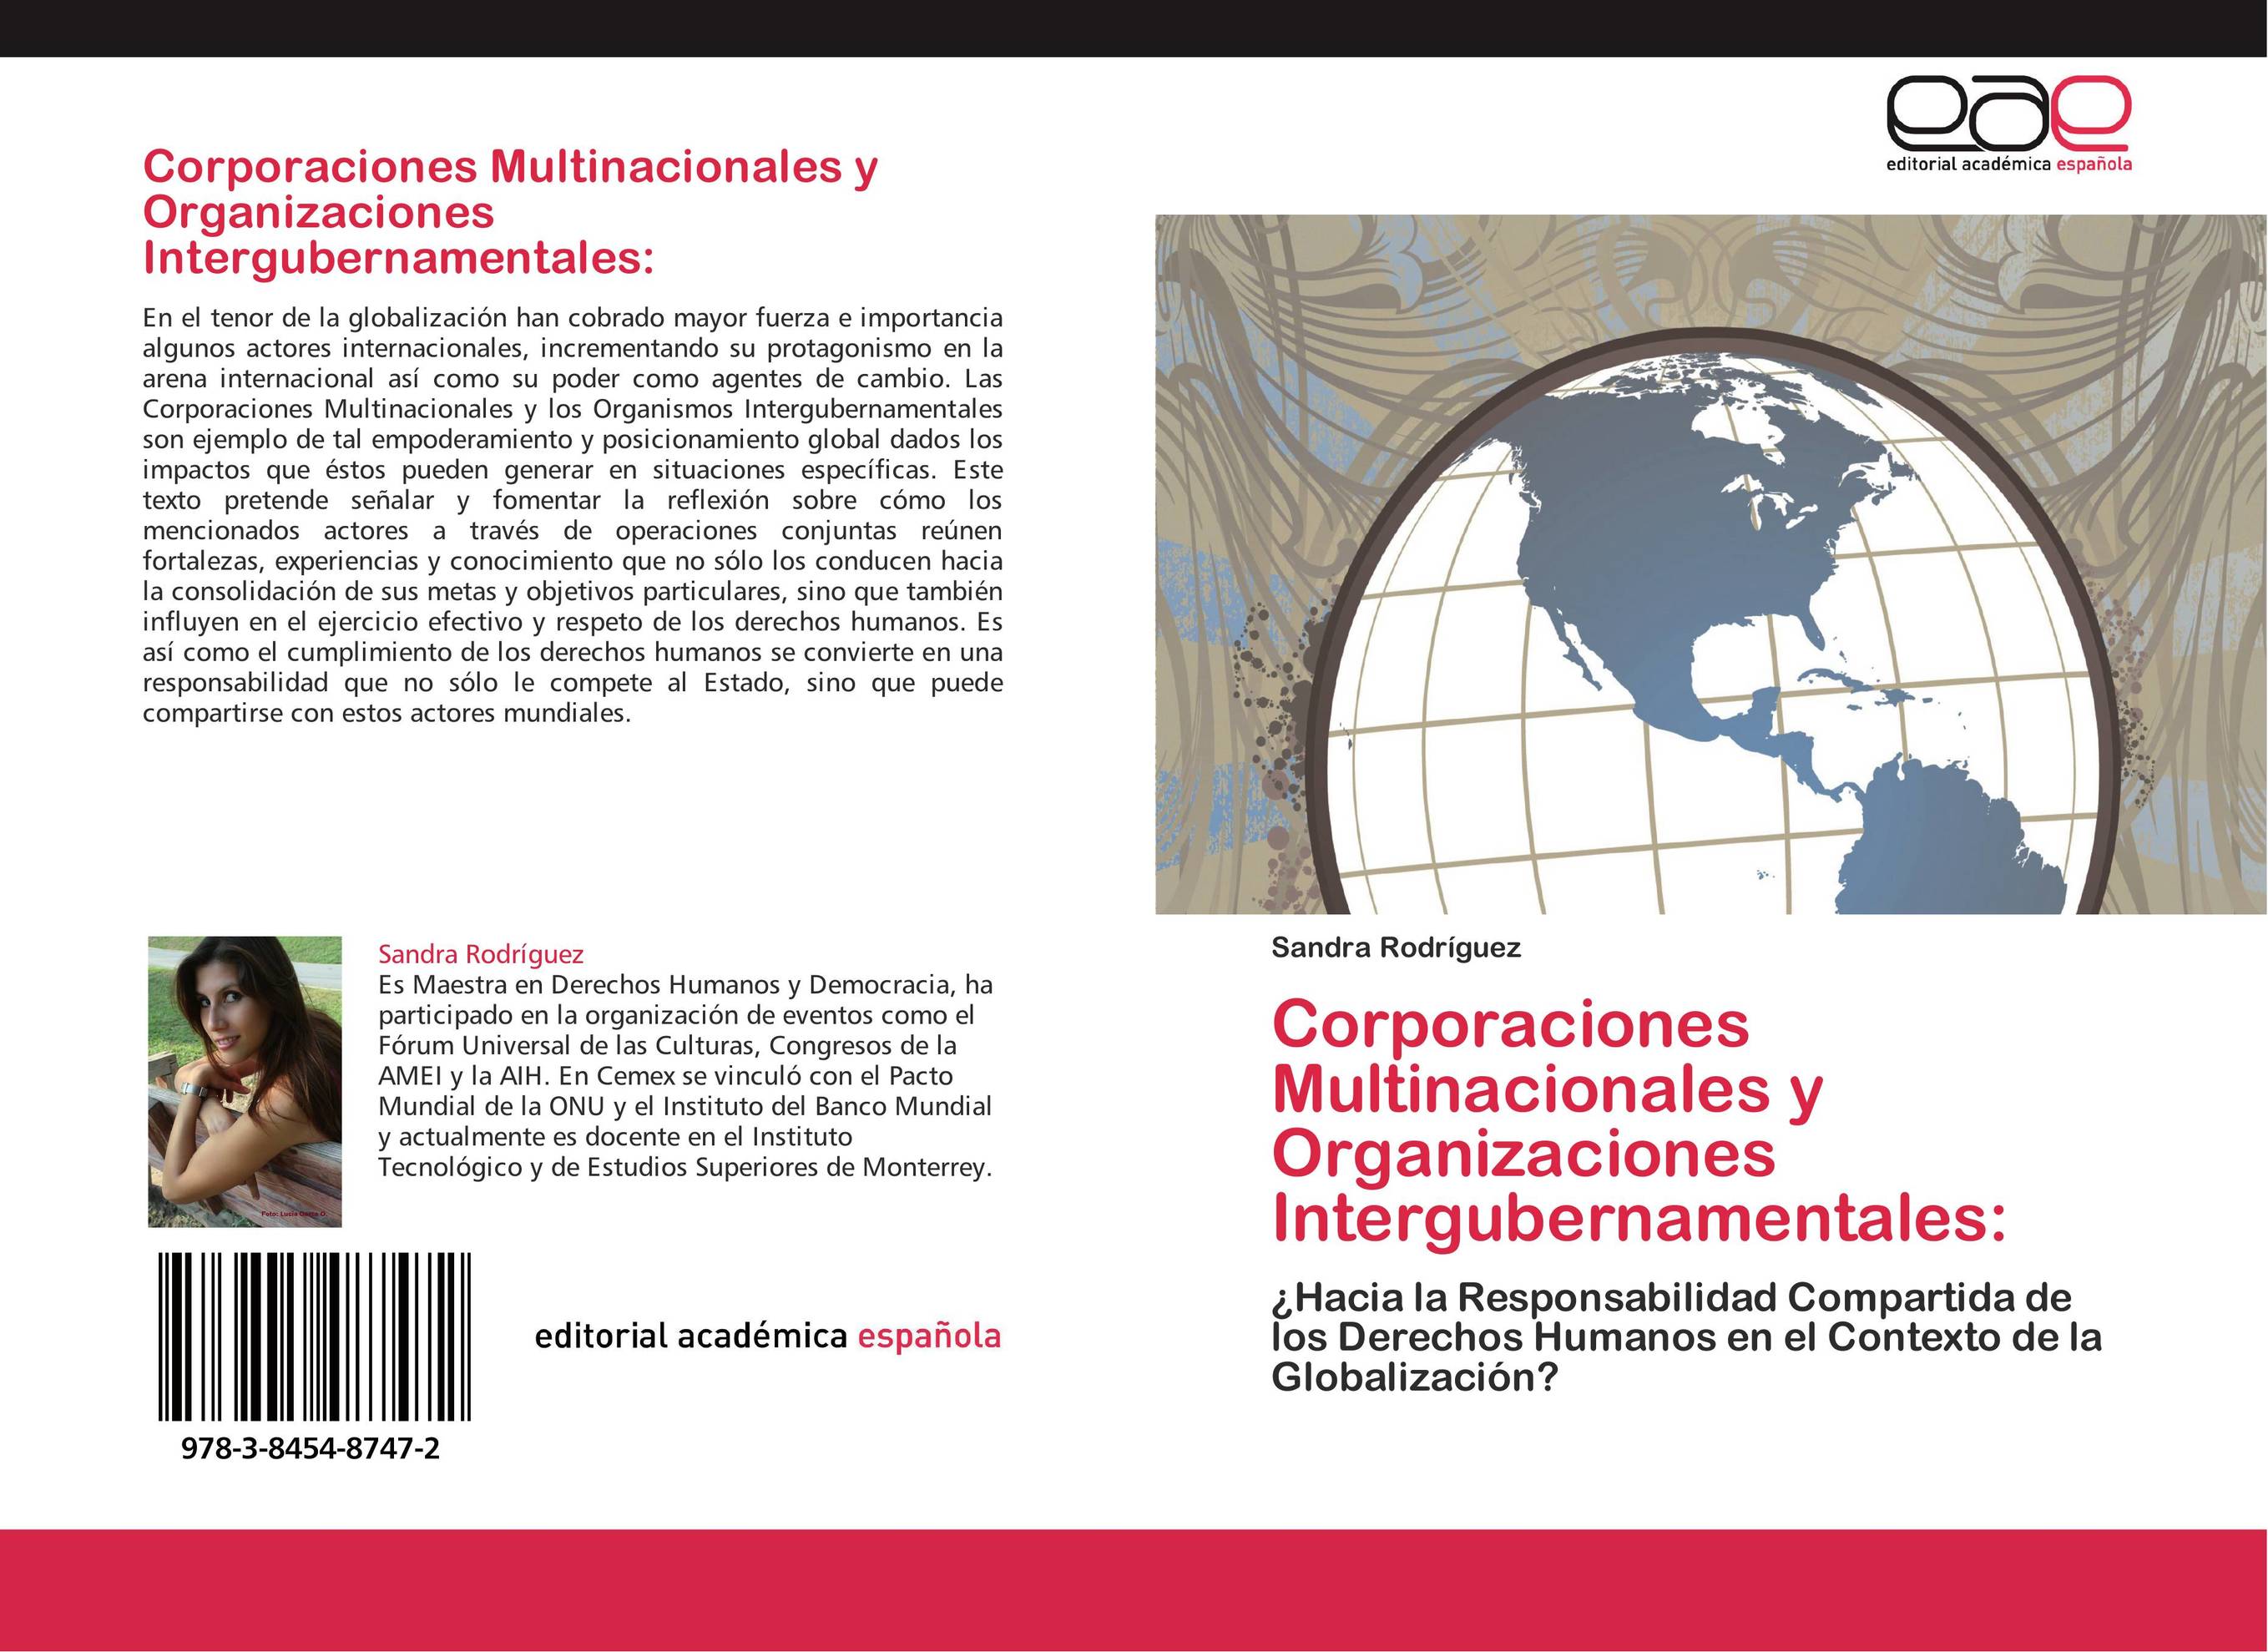 Corporaciones Multinacionales y Organizaciones Intergubernamentales: